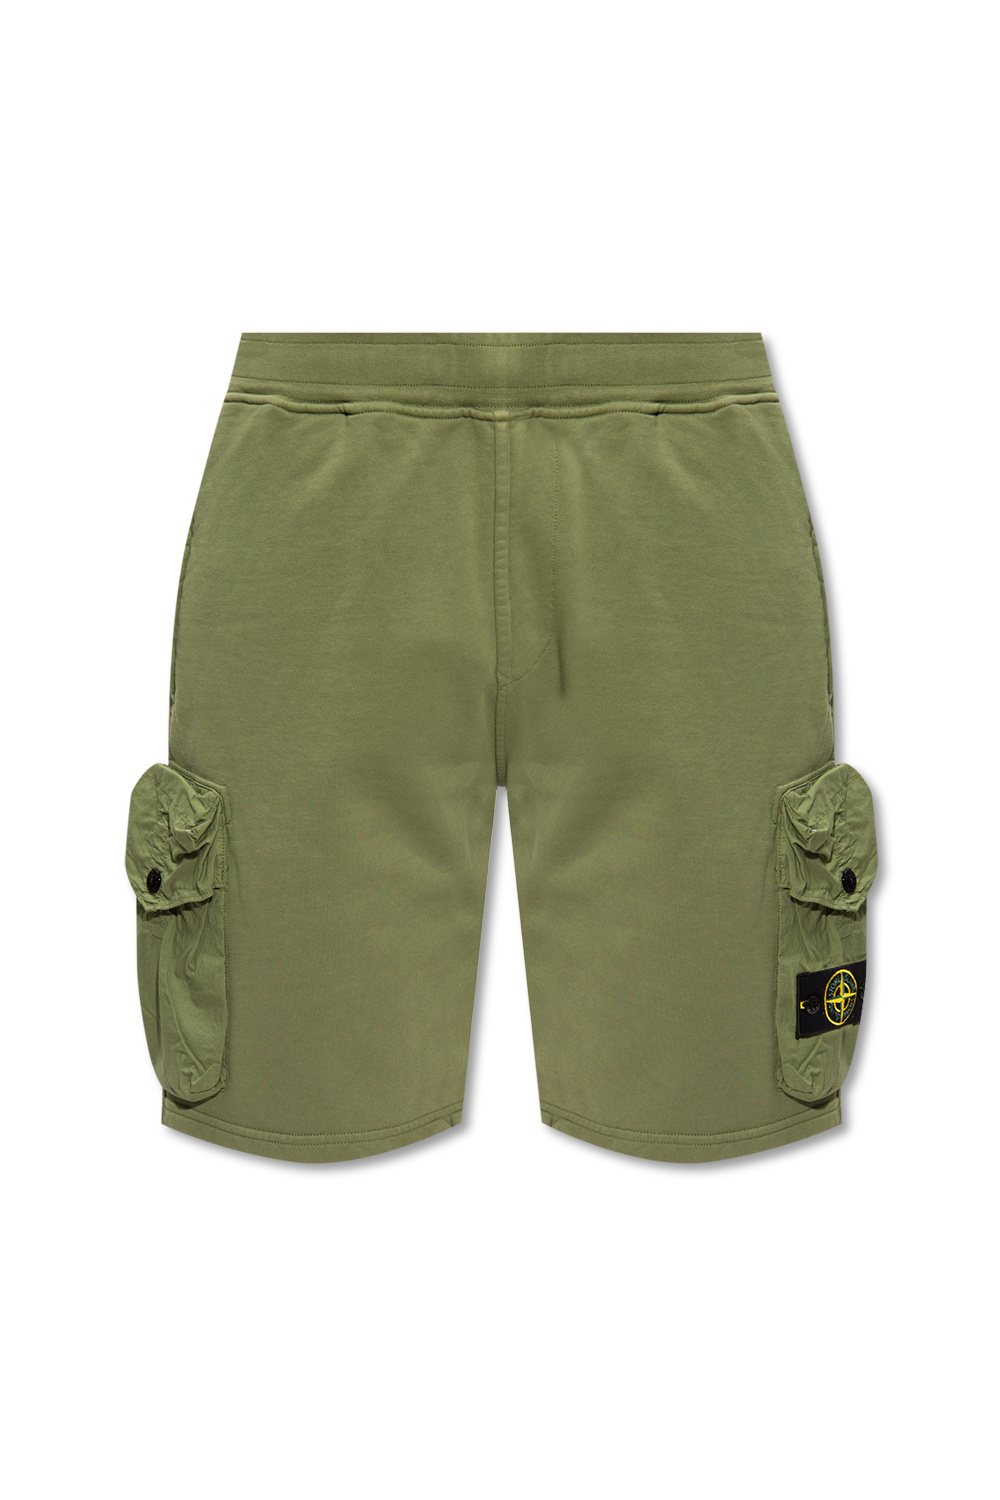 Stone Island Cargo shorts